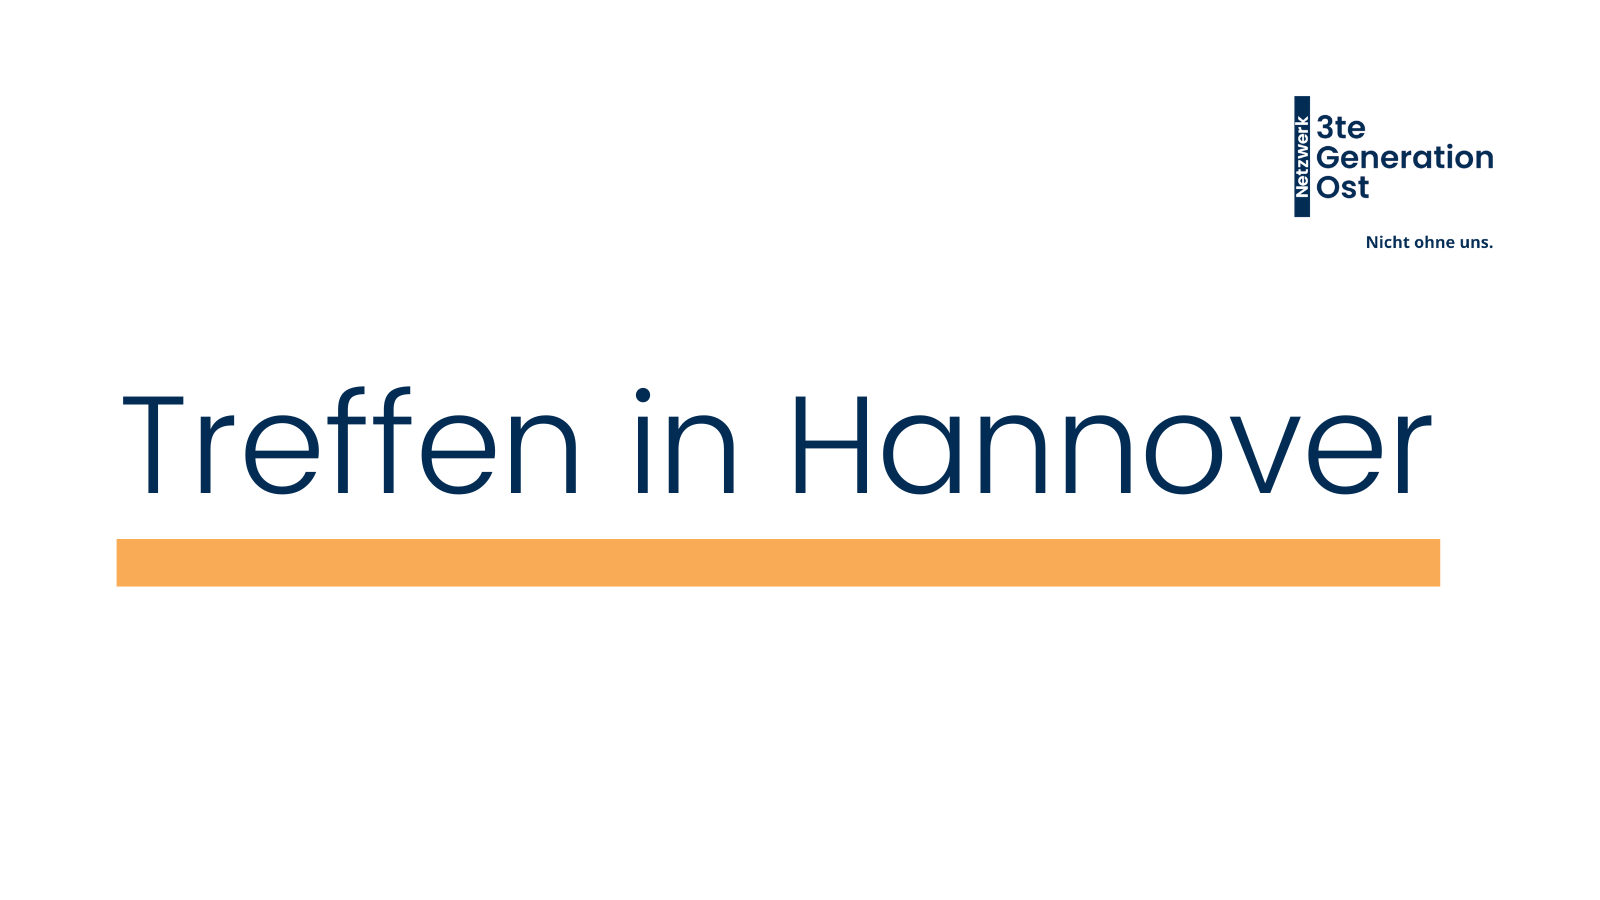 Logo Netzwerk 3te Generation Ost oben rechts. Mittig platziert in dunkelblau - Treffen in Hannover mit orangenem Unterstrich